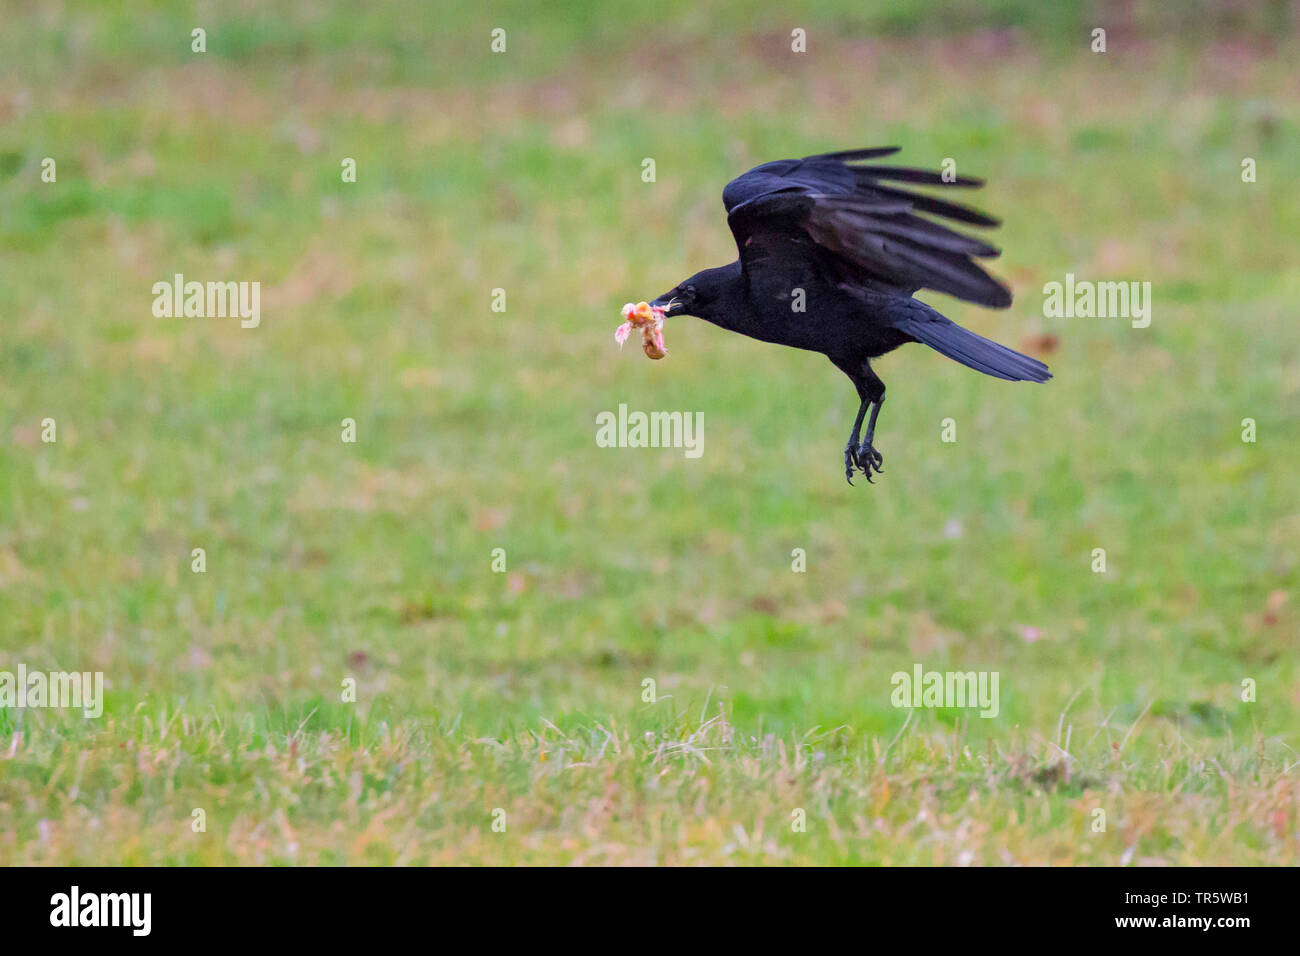 Corneille noire (Corvus corone, Corvus corone corone), s'envoler avec une proie jeune oiseau, vue de côté, l'Allemagne, Bavière, Niederbayern, Basse-Bavière Banque D'Images